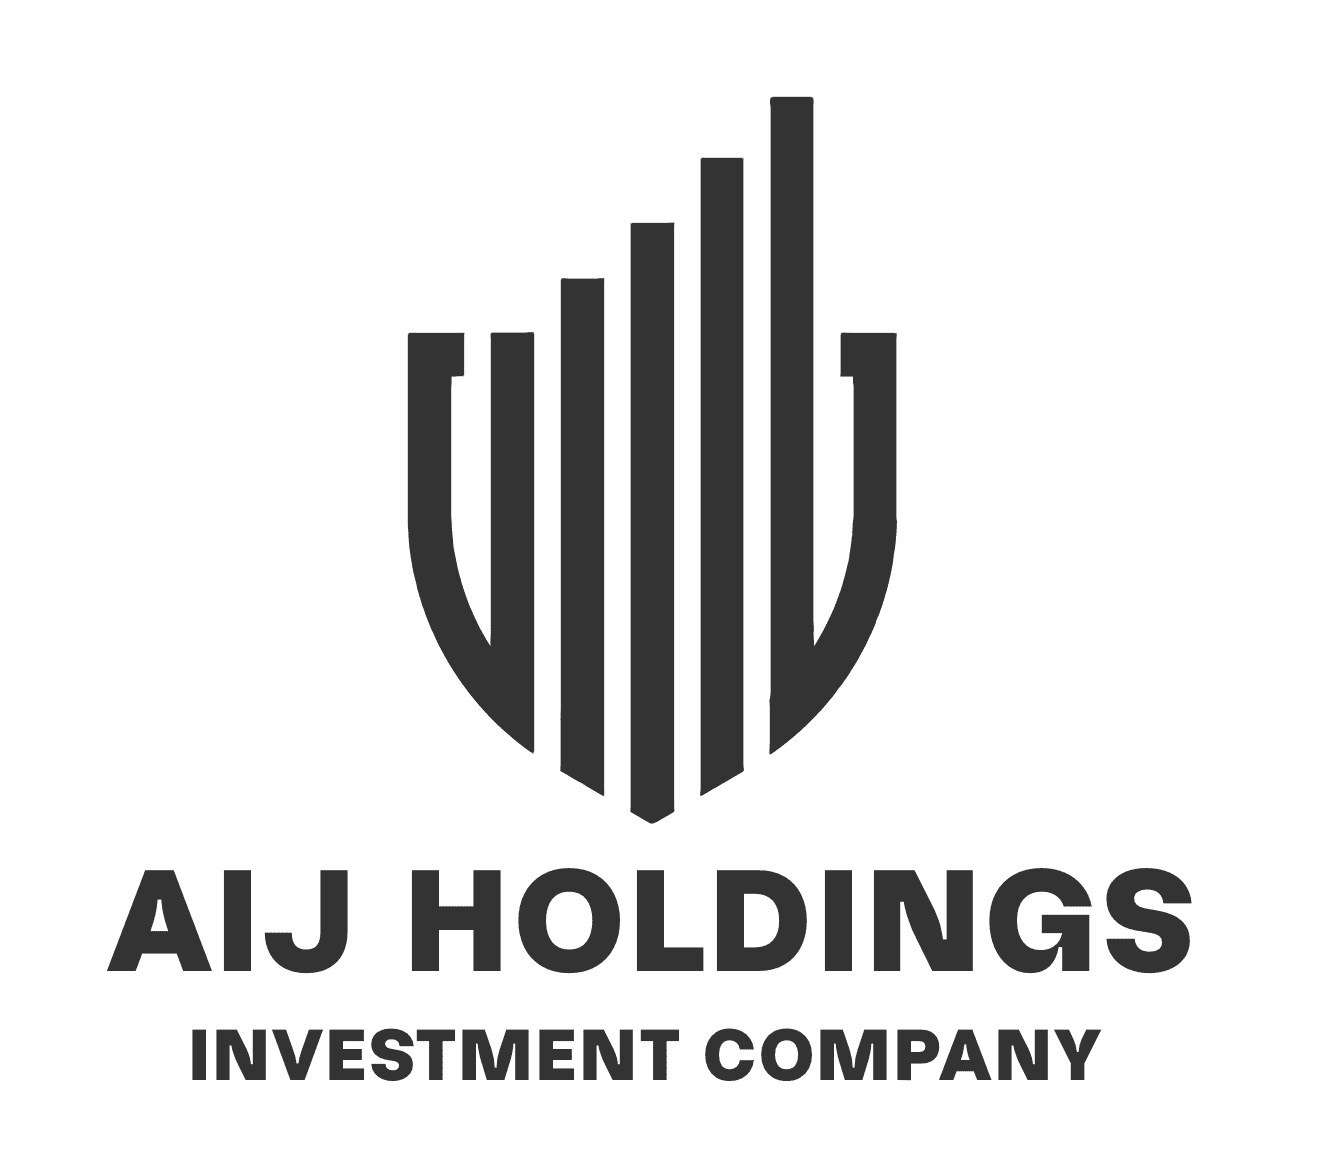 AIJ Holdings